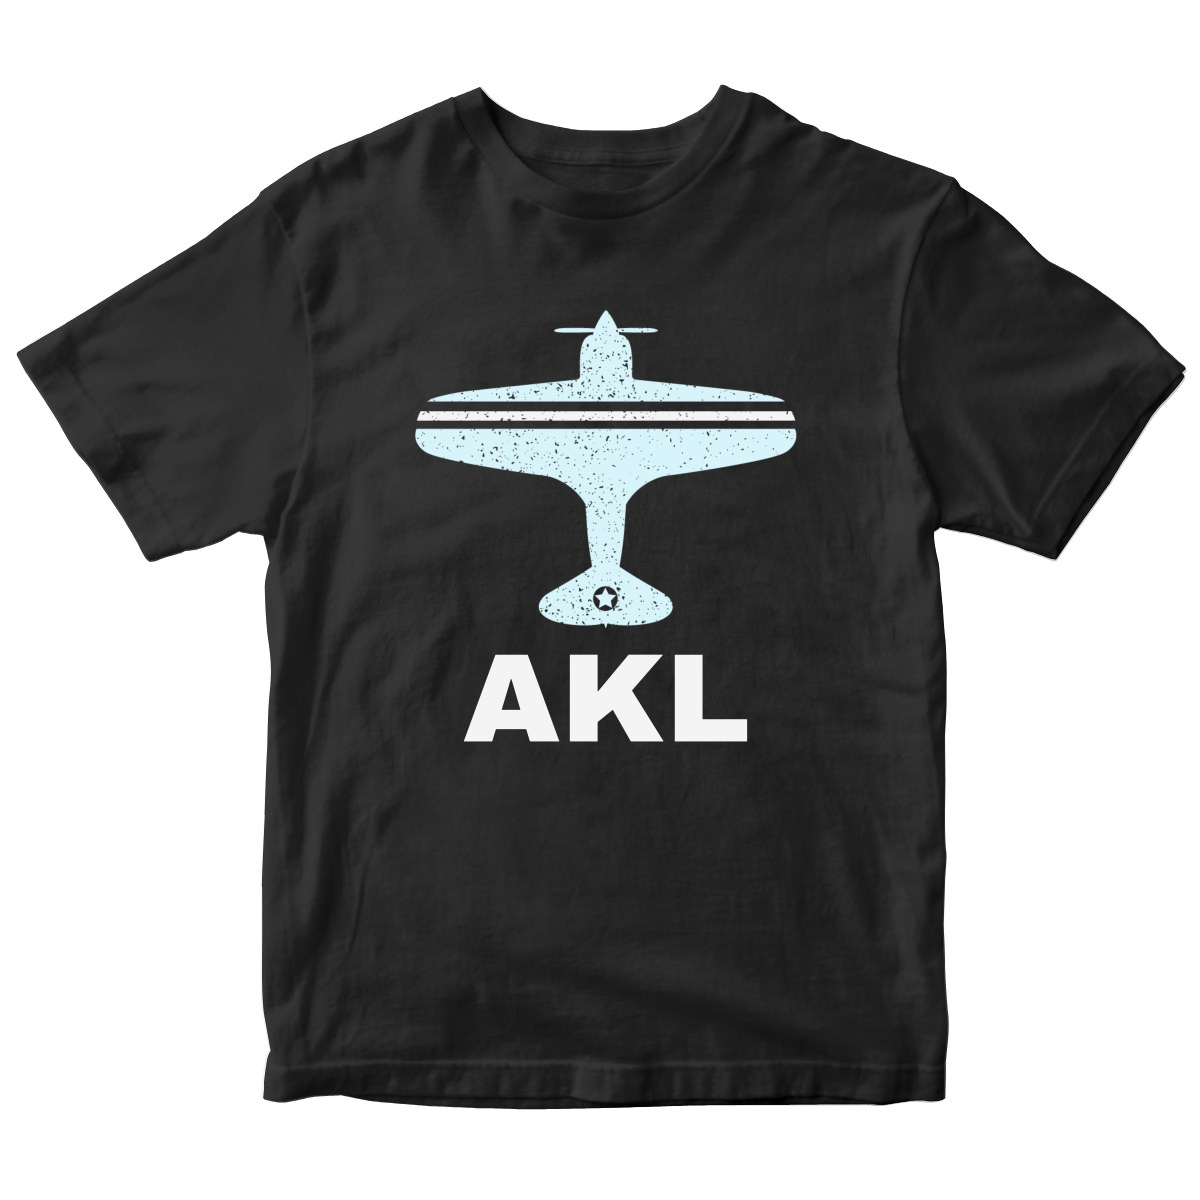 Fly Auckland AKL Airport Kids T-shirt